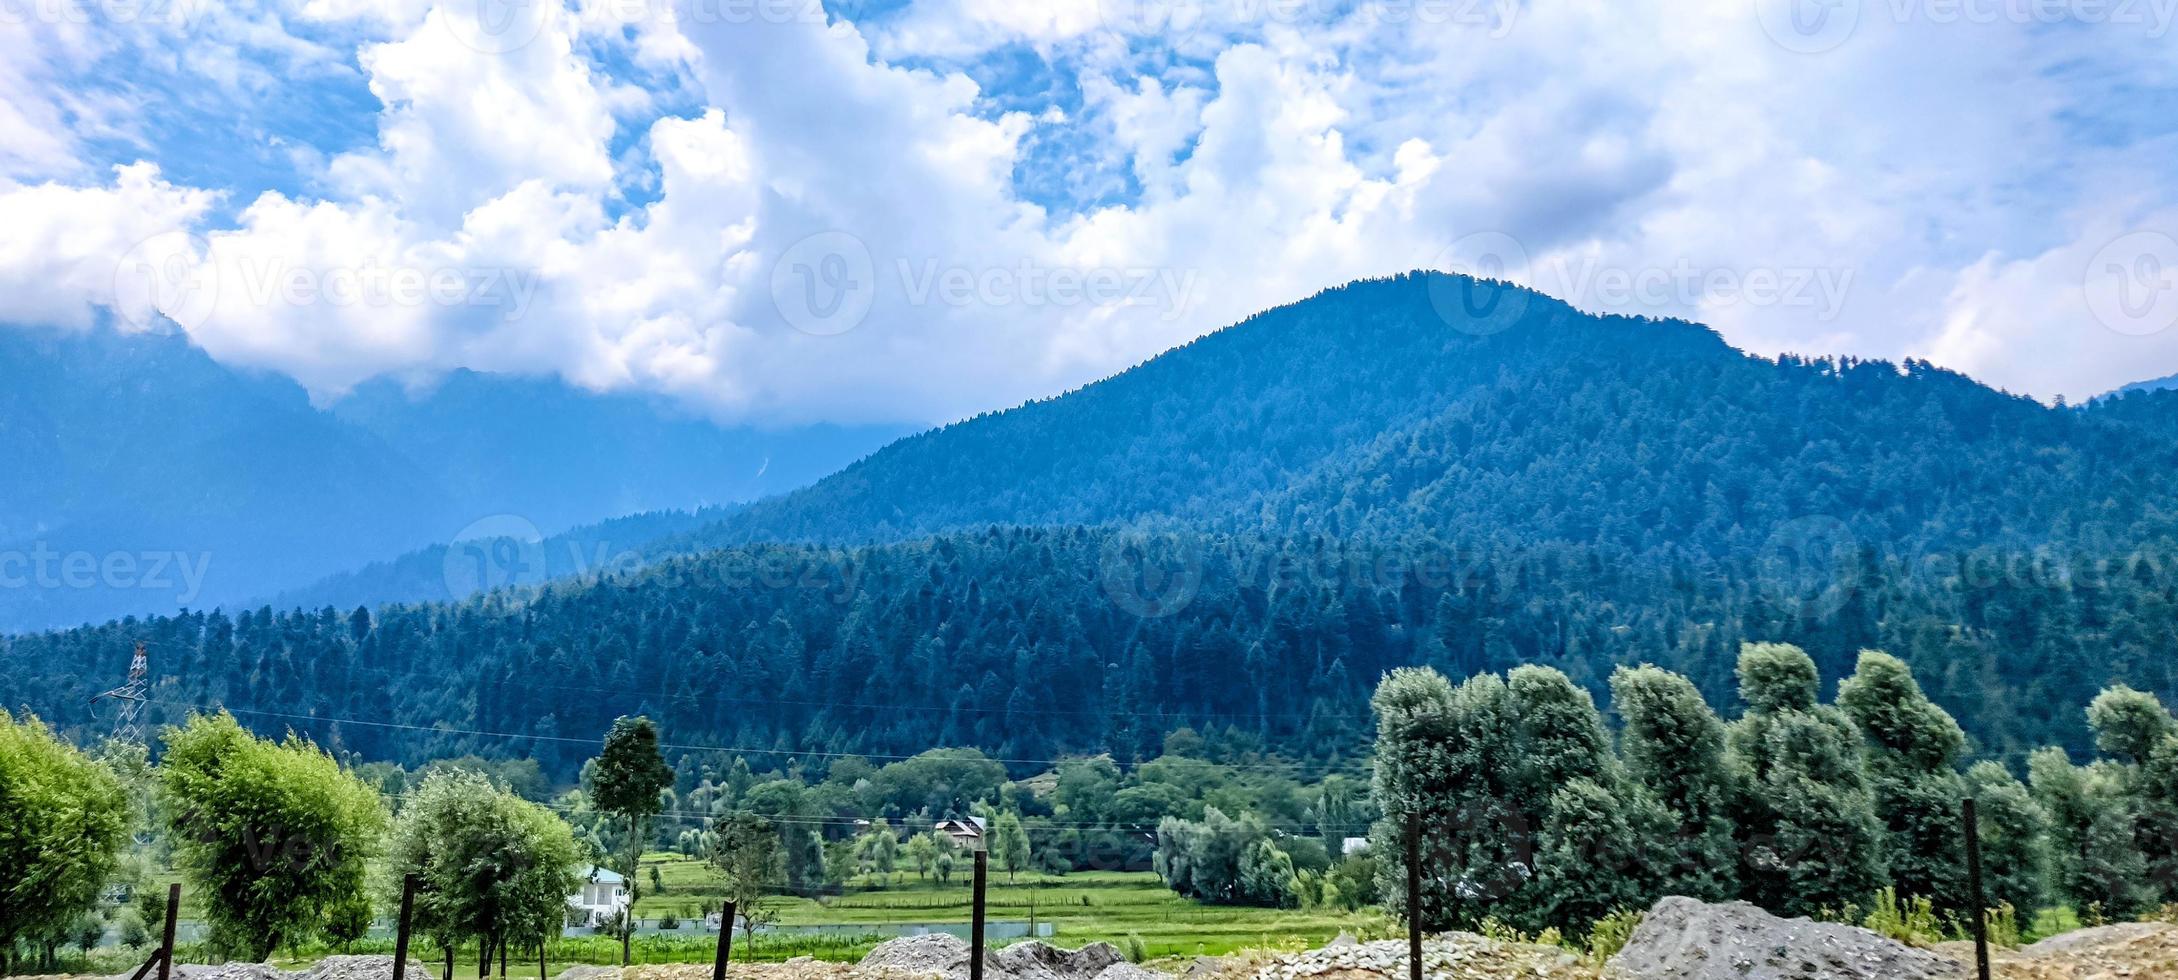 Schöne Aussicht auf die Berge und den bewölkten Himmel von Jammu und Kaschmir foto